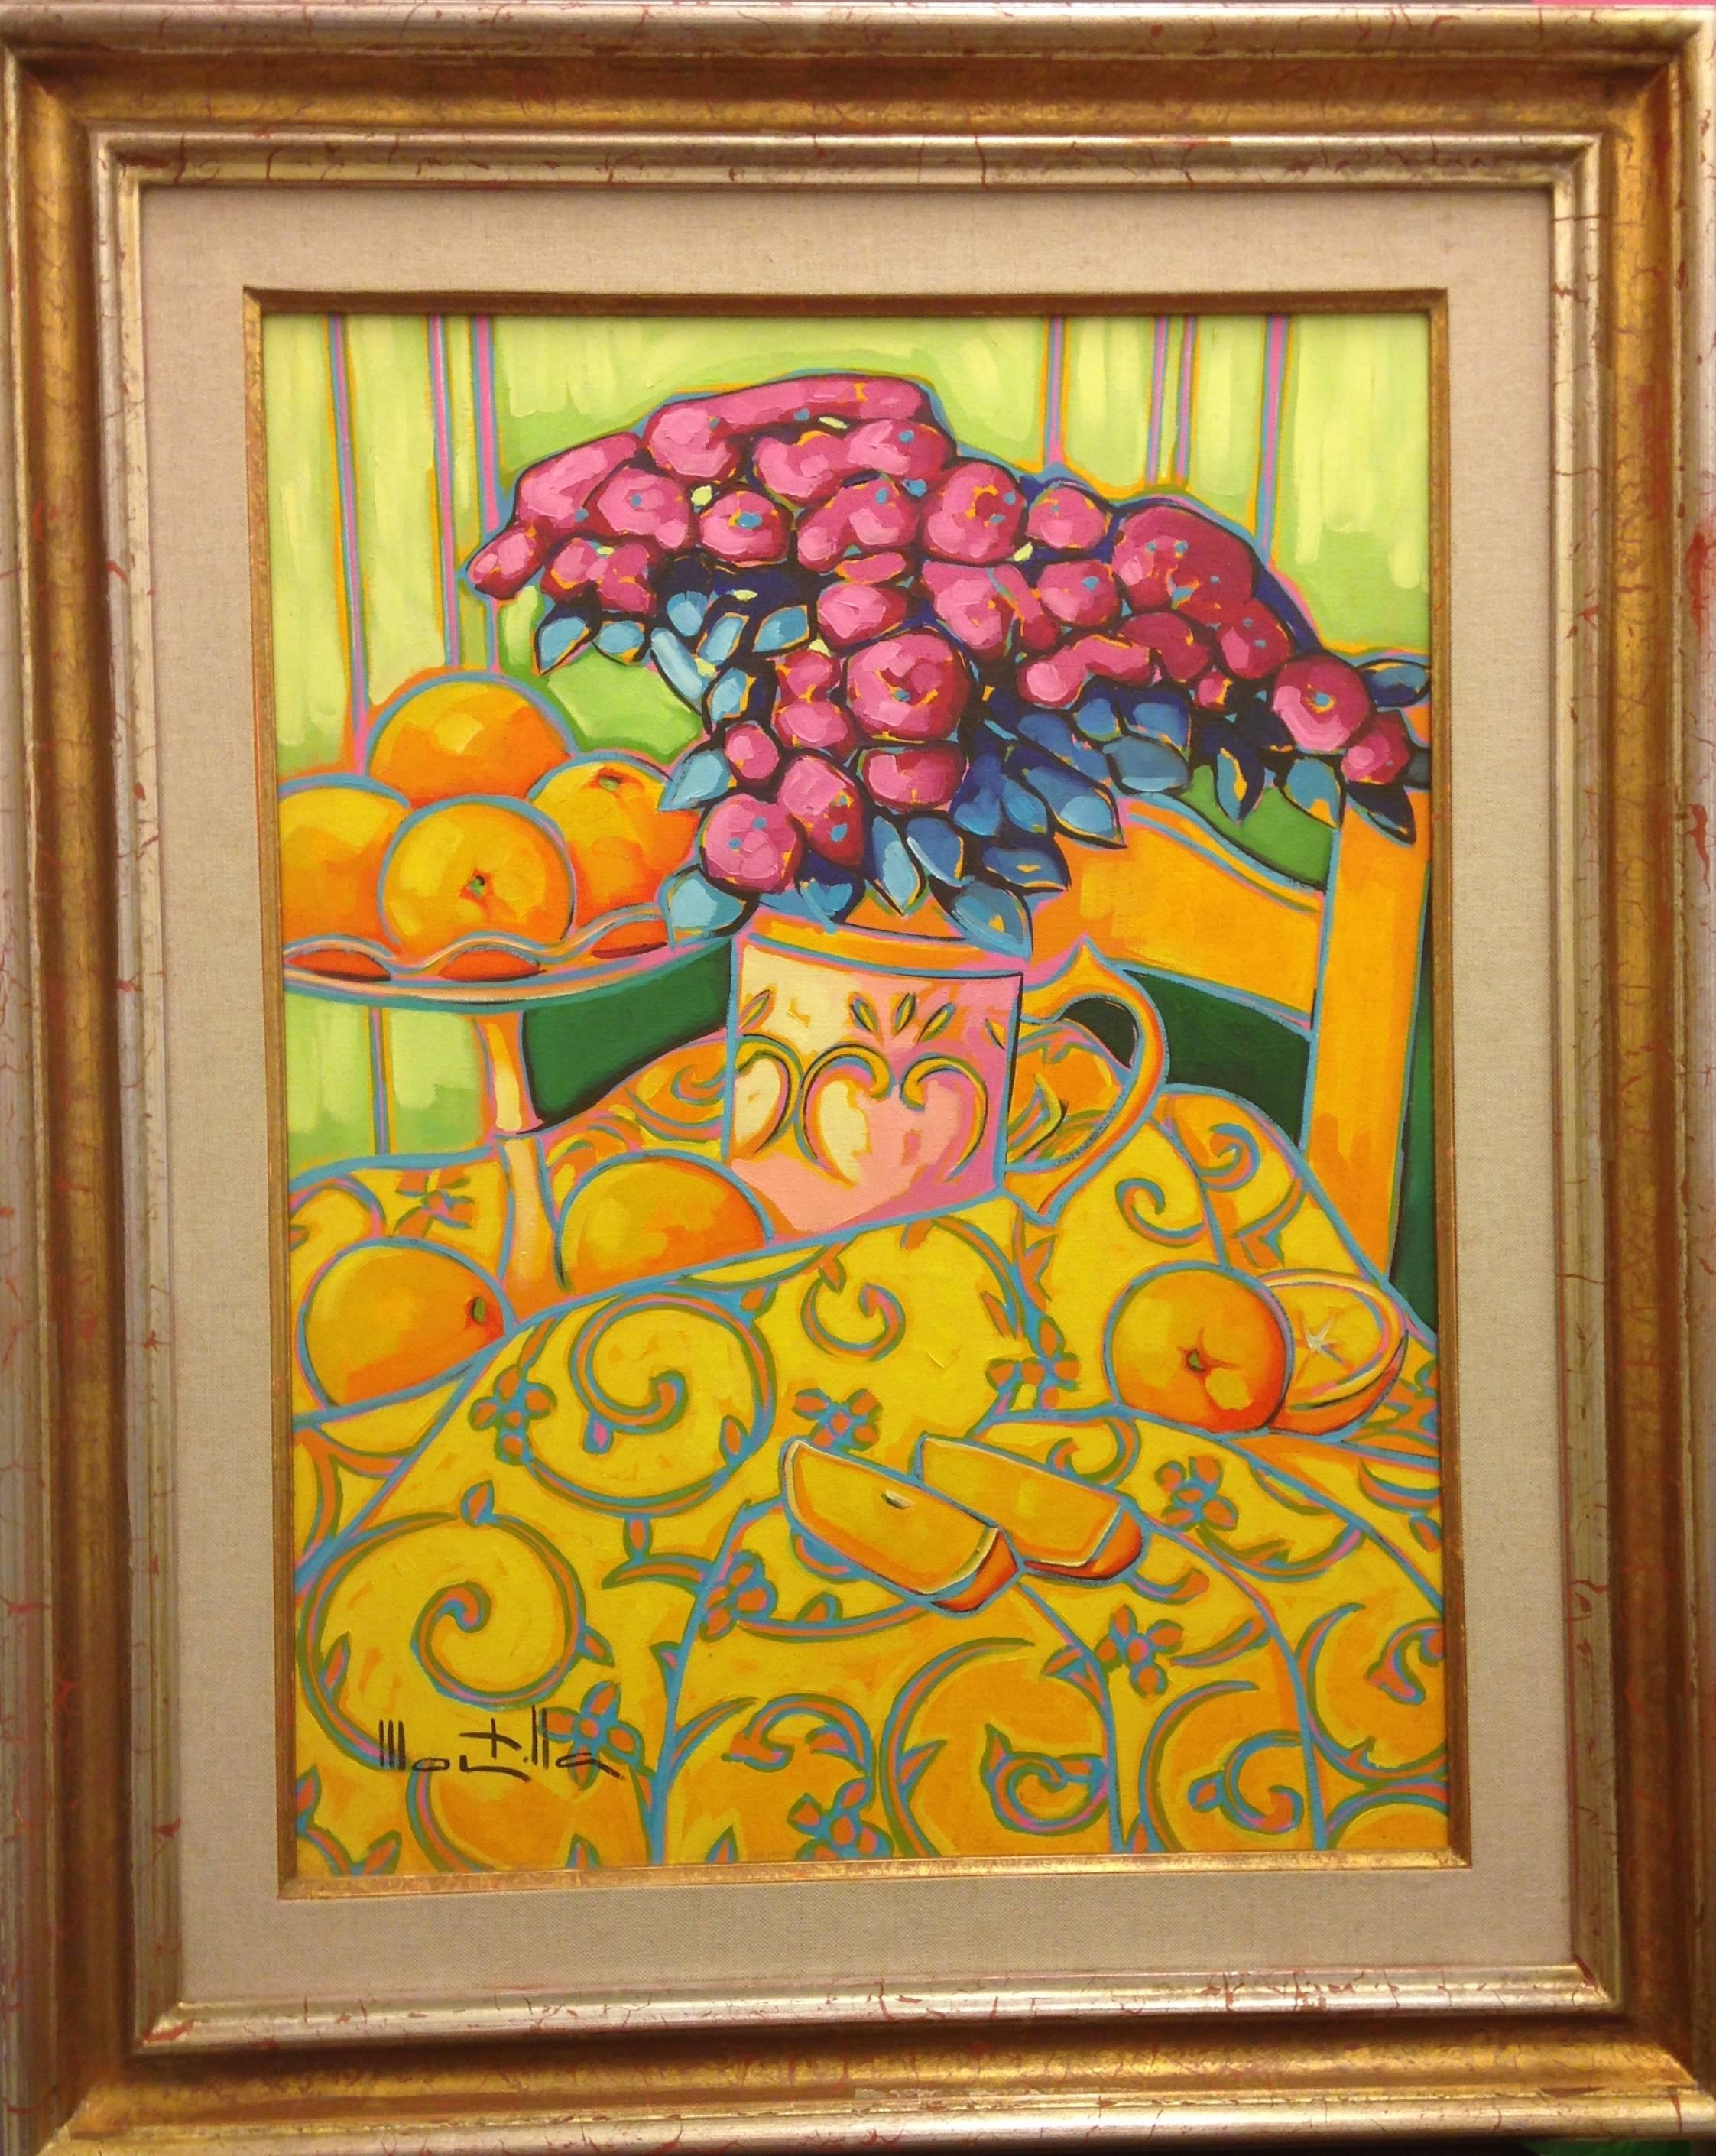 Orangen. Montilla Öl auf Leinwand. Expressionistisches Stillleben in Orange, Yelow, Fuchsia (Expressionismus), Painting, von Chico Montilla